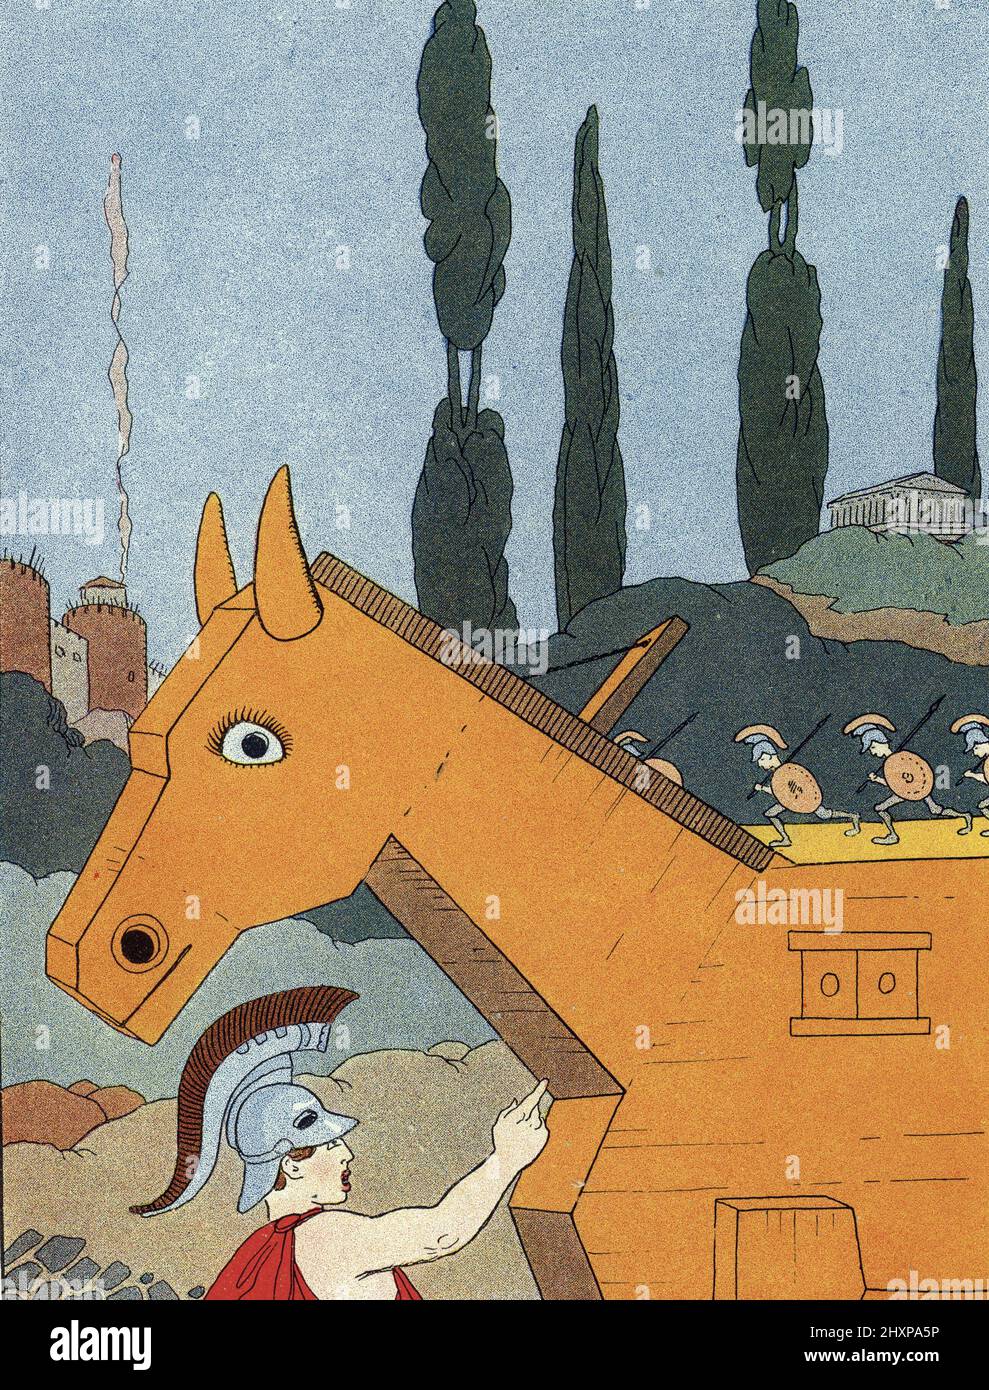 Mythologie grecque : representation du cheval de Troie (Trojan horse) Illustration de Benjamin Rabier (mort en 1939) pour 'les animaux mythologiques' 1926 Collection privee Stock Photo